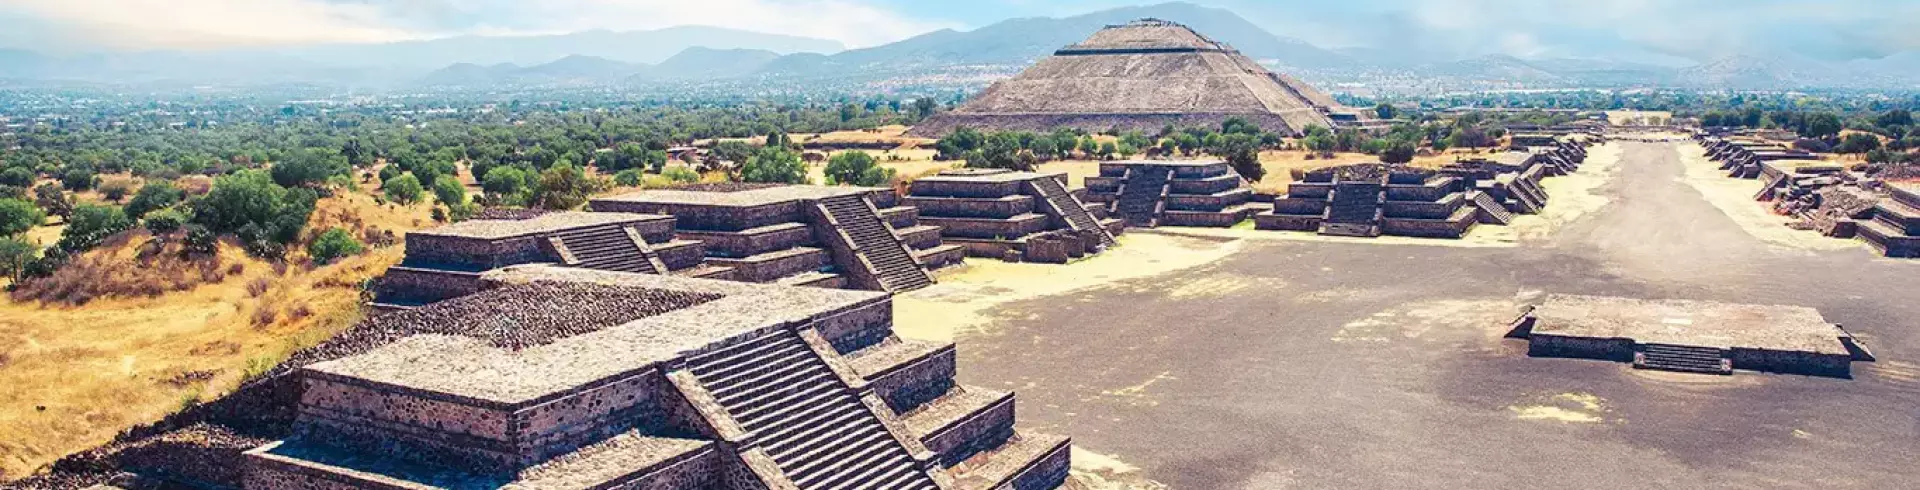 Meksyk - imperium Azteków